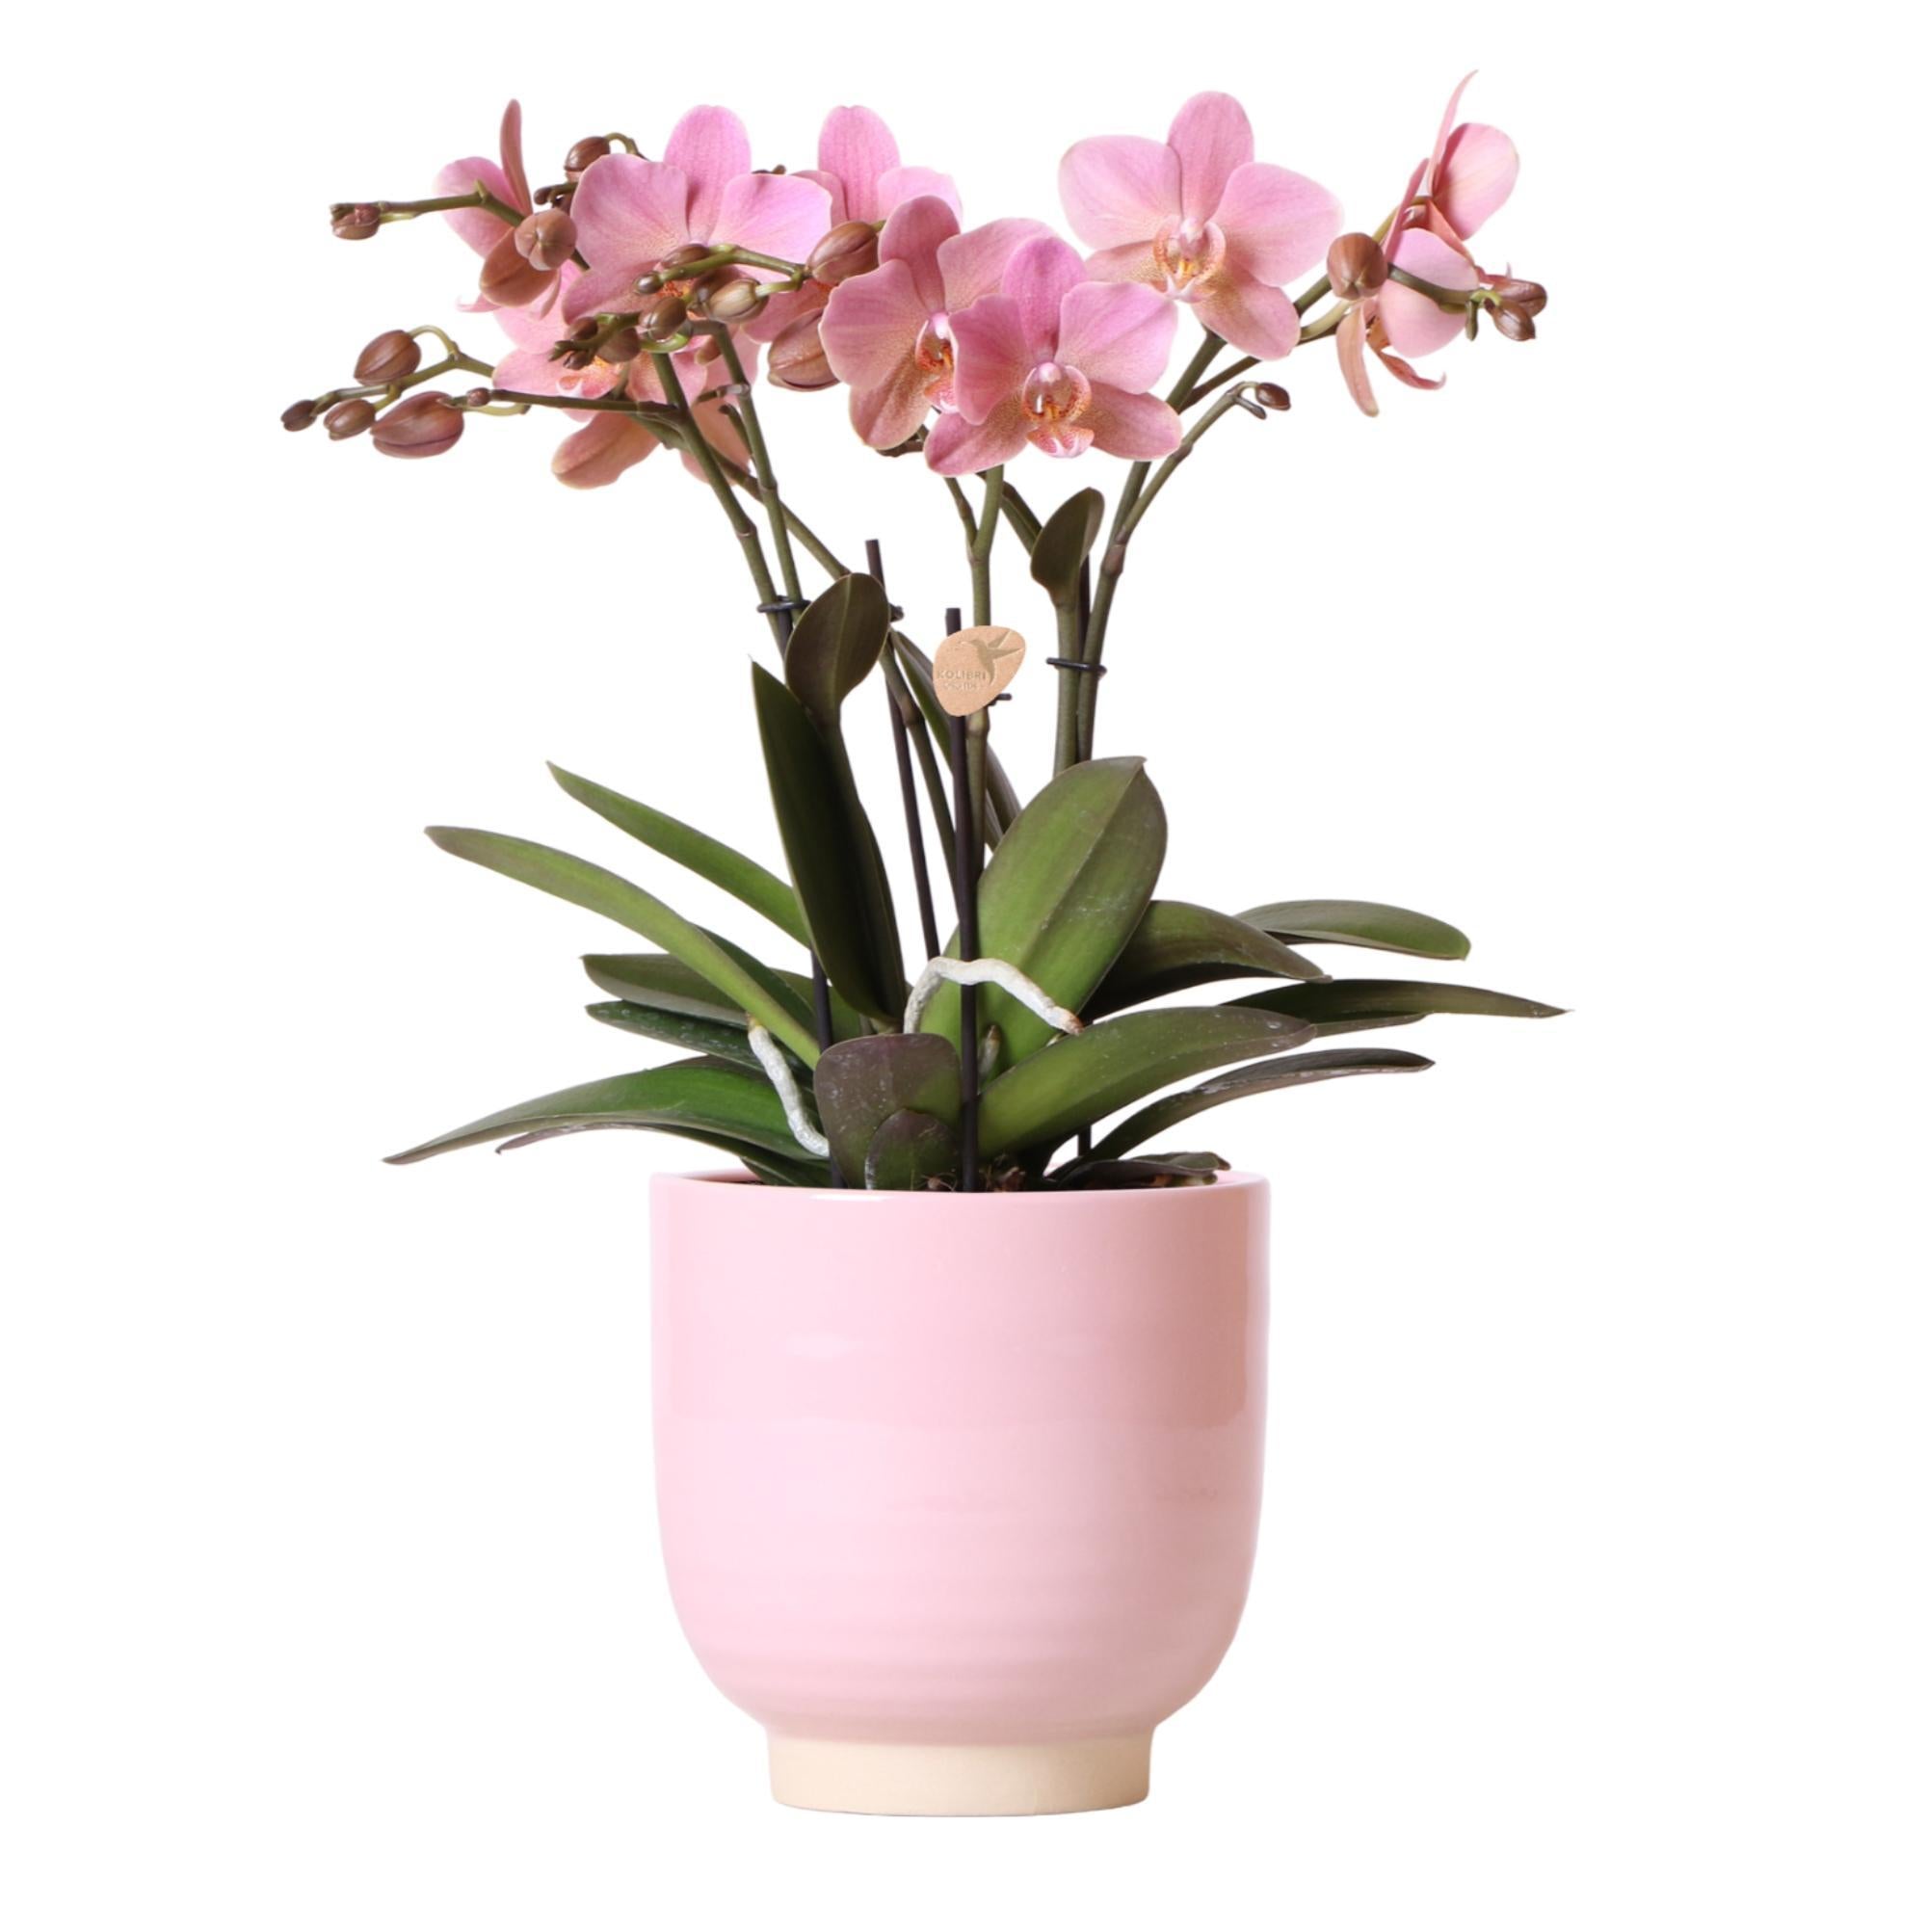 kolibriorchids Kolibri Orchids - Orchidée Phalaenopsis Jewel Treviso rose dans un pot émaillé rose - taille du pot 12cm